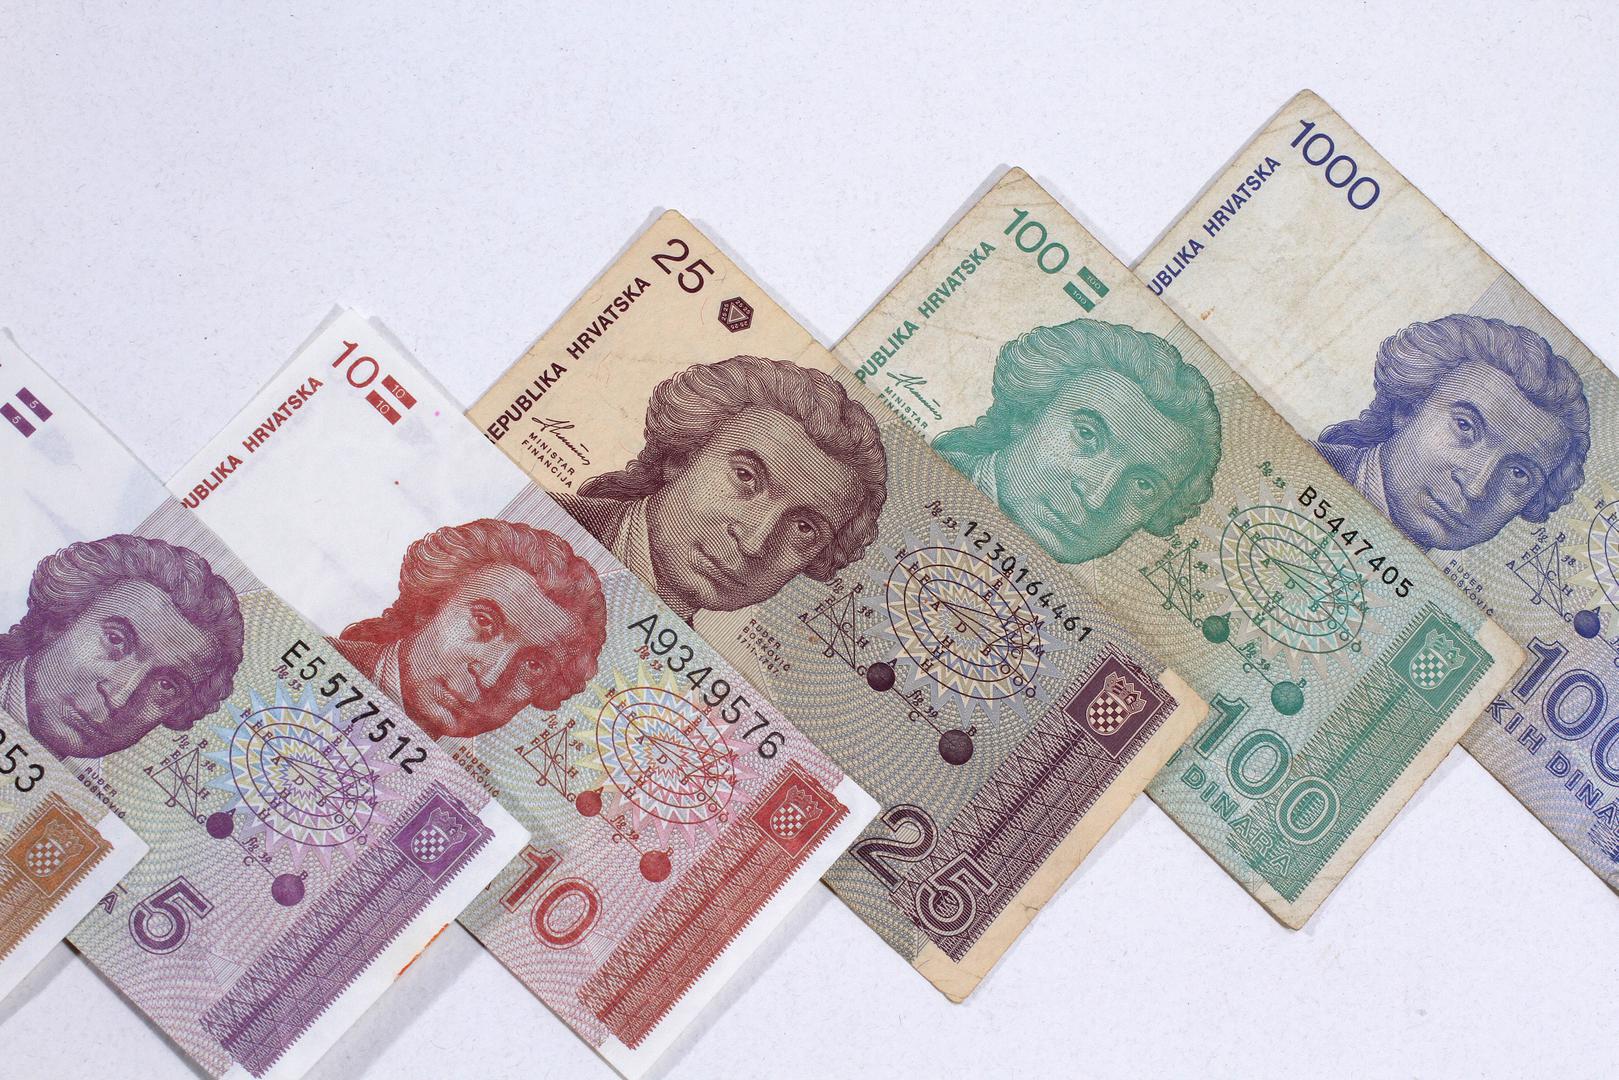 Hrvatski dinar je kao zakonsko sredstvo plaćanja u Republici Hrvatskoj uveden 23. prosinca 1991. godine u zamjenu za jugoslavenski dinar.